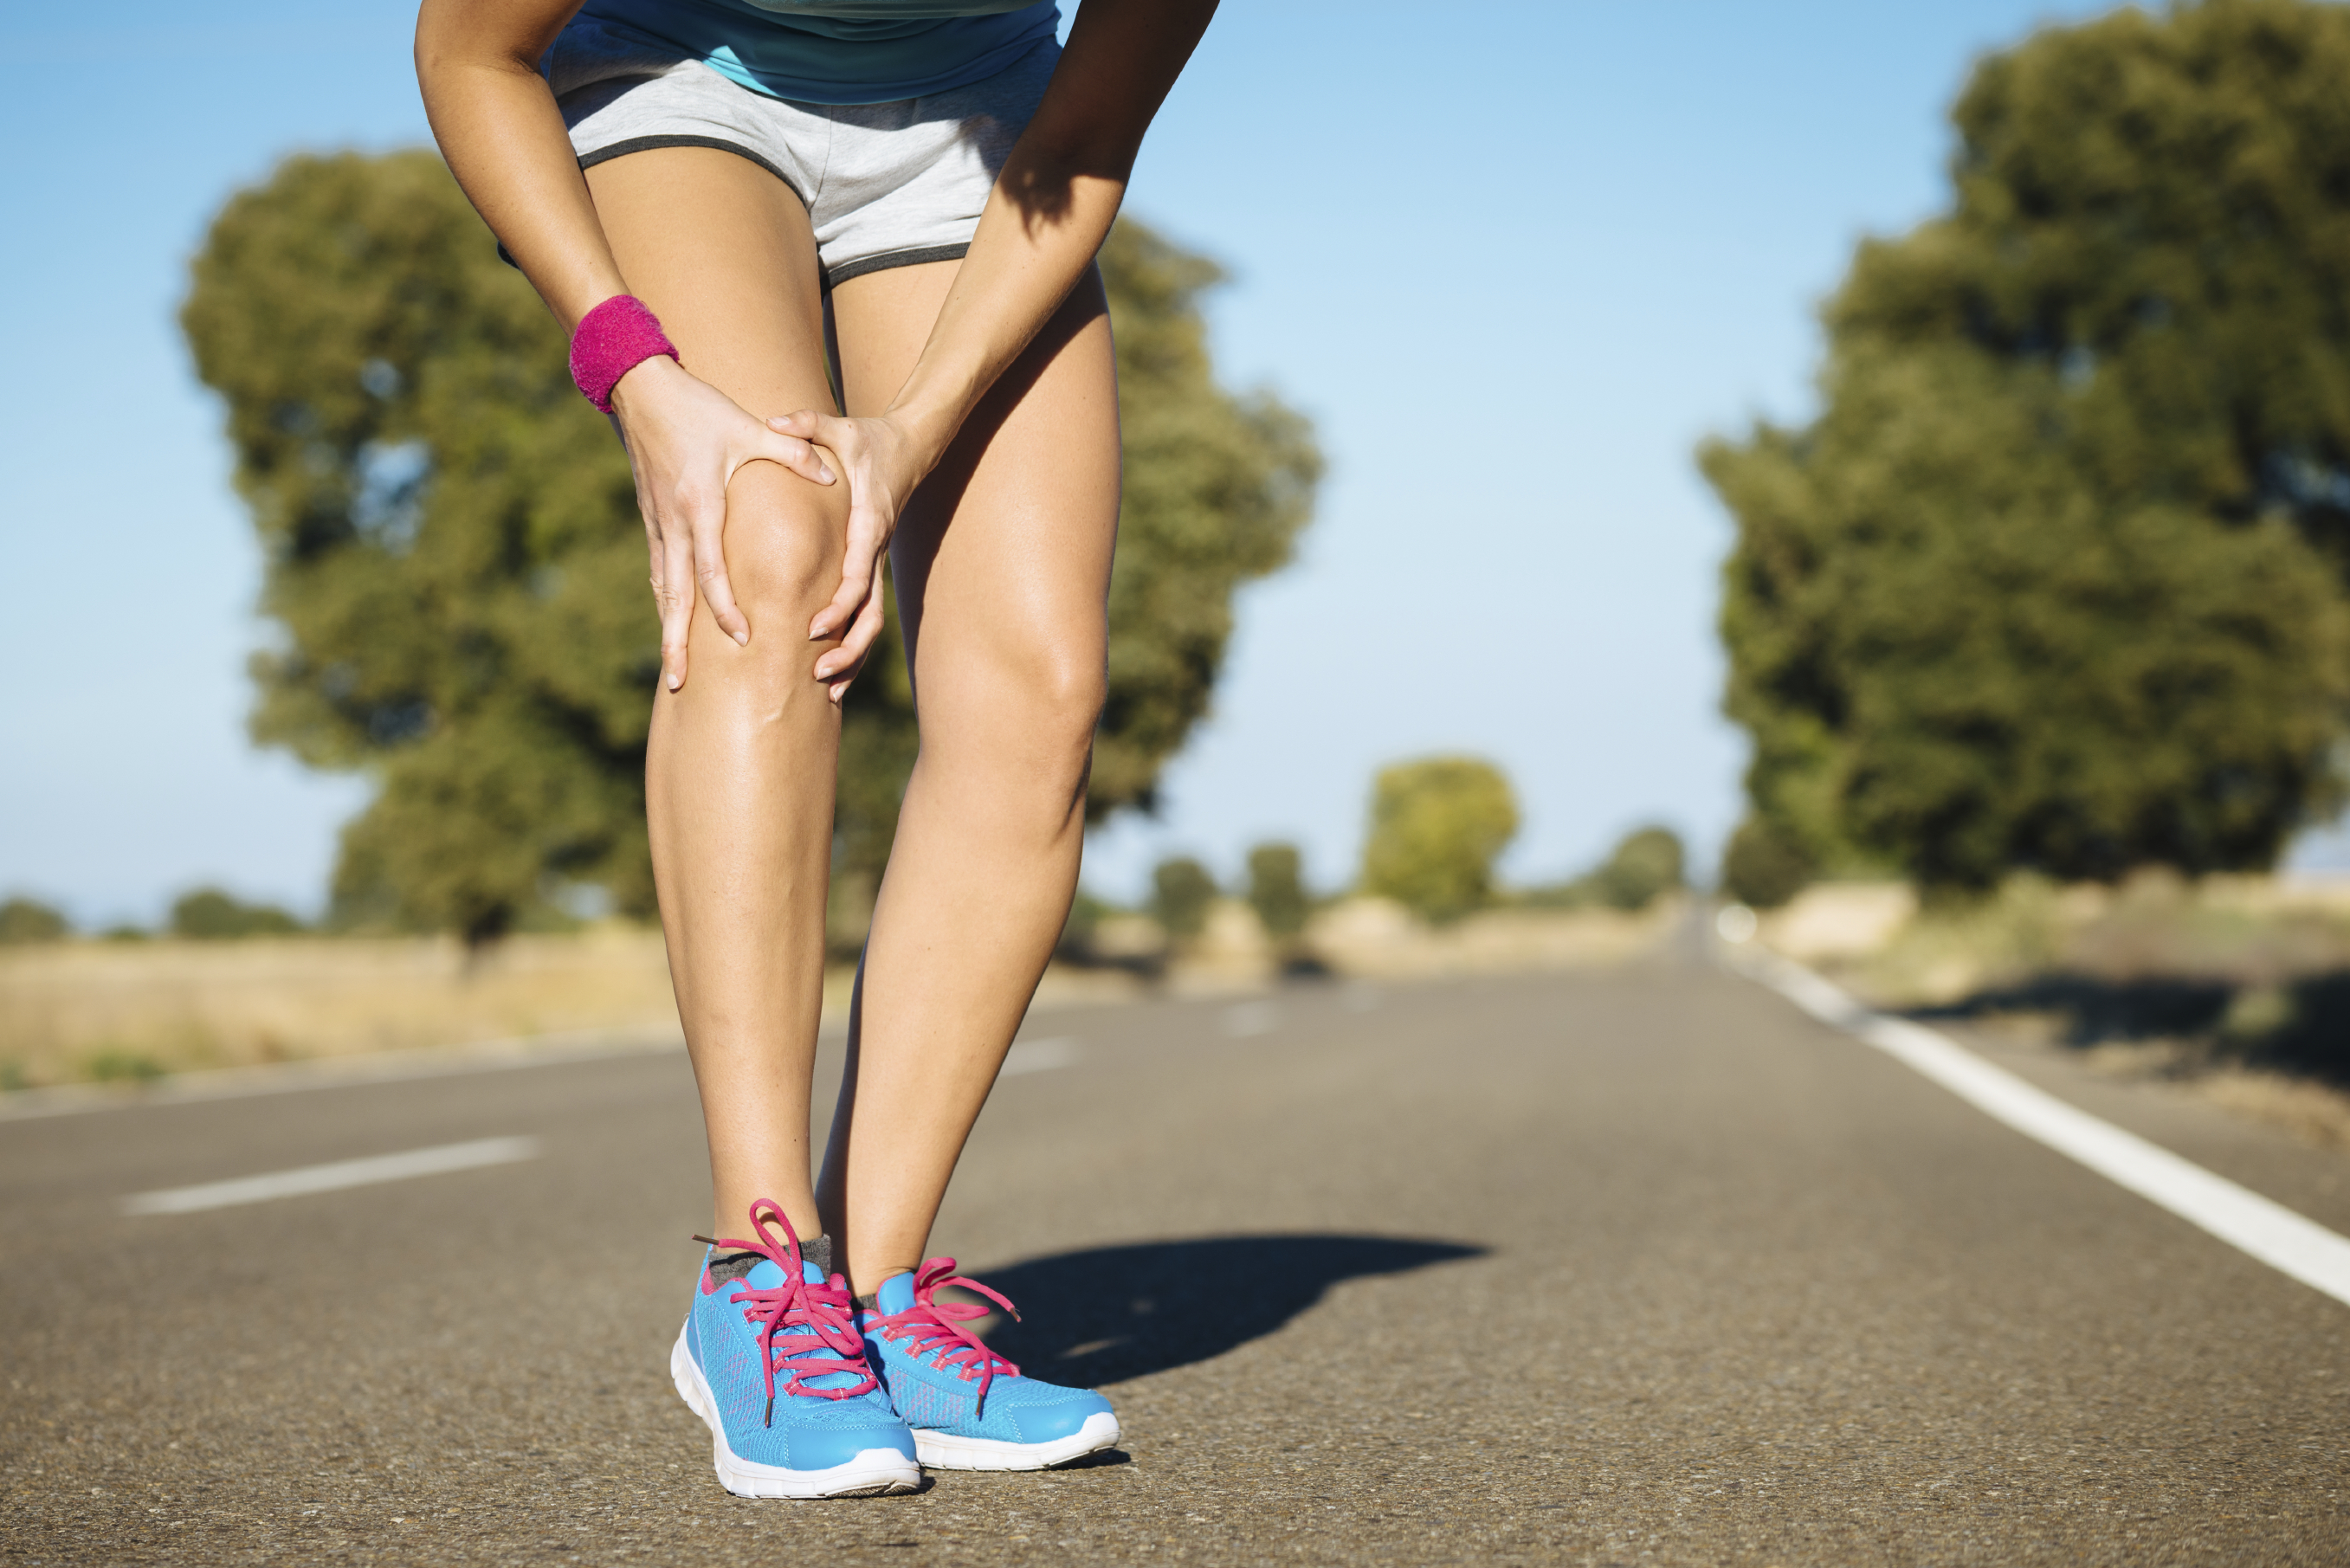 Female runner knee injury and pain.